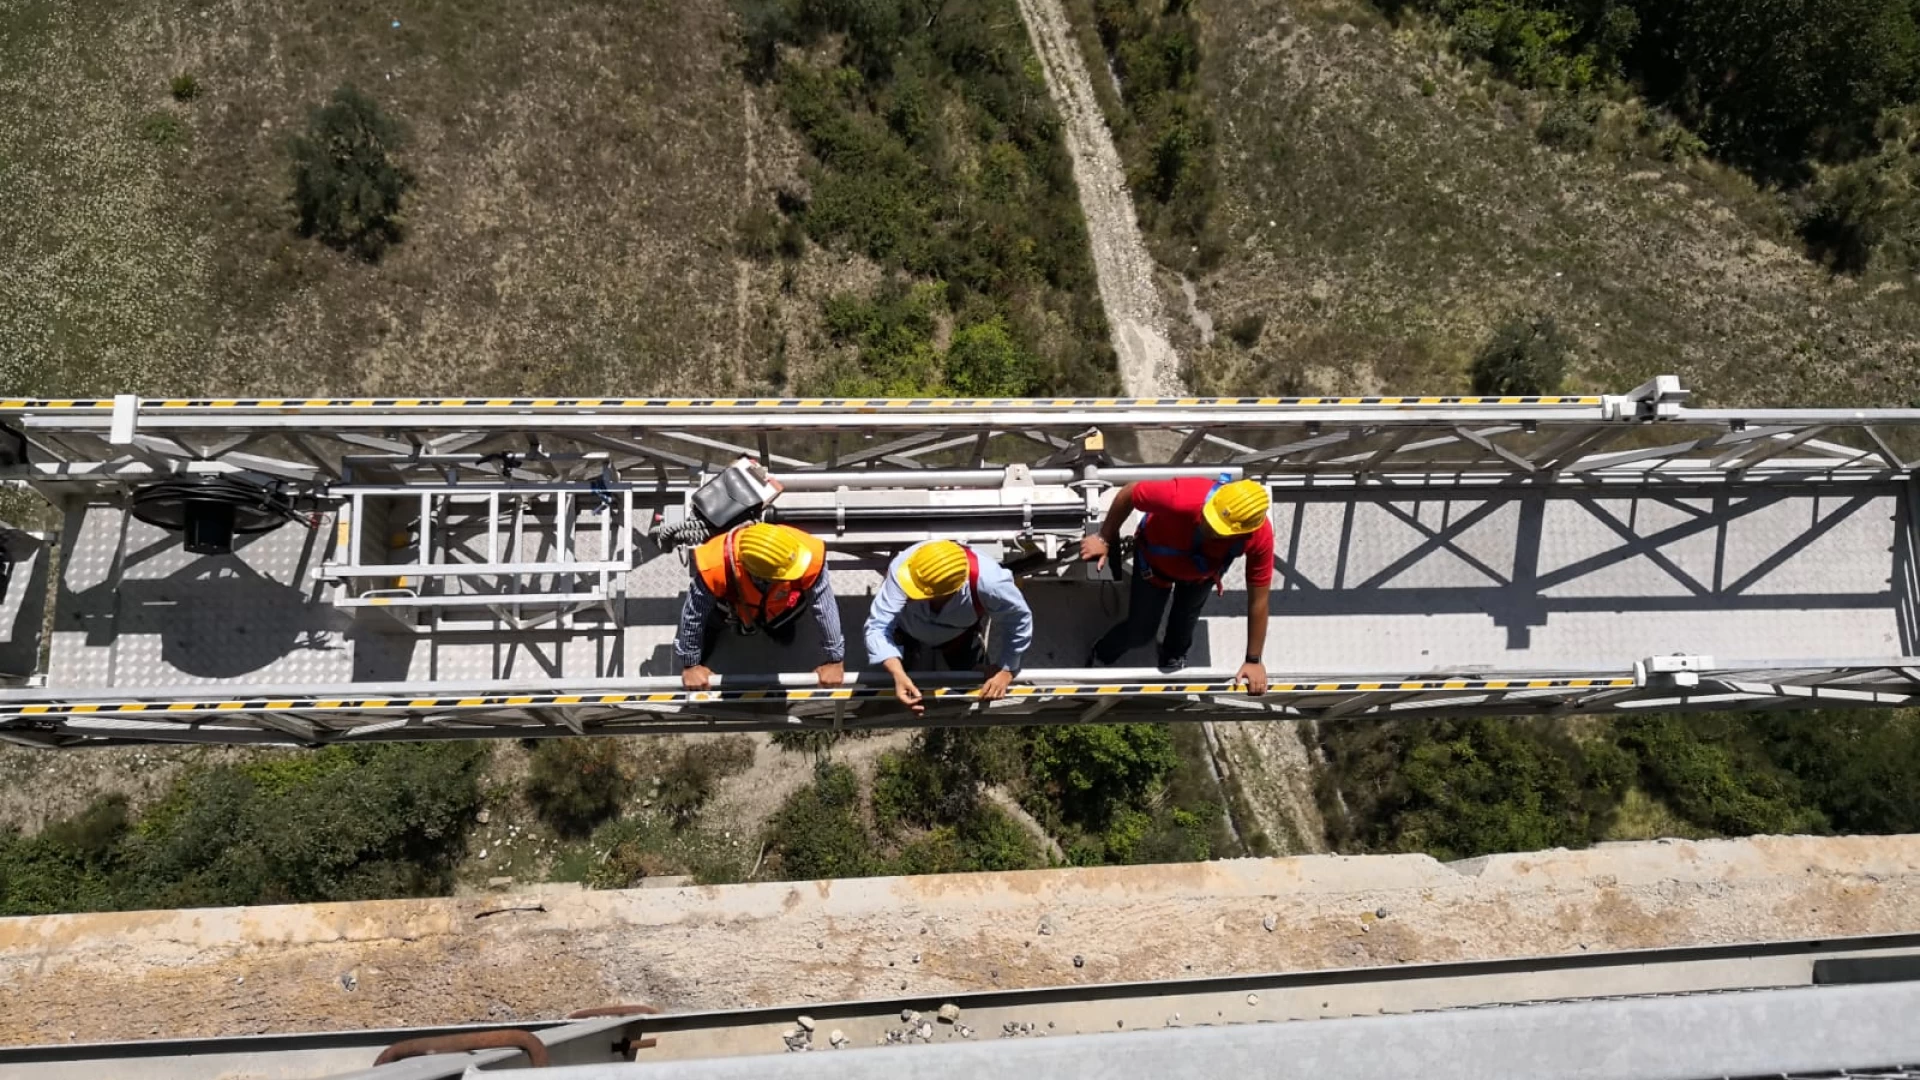 Viadotto Sente , l'Ordinanza di chiusura ufficiale da parte del settore tecnico della Provincia. Il ponte verrà riaperto dopo gli urgenti lavori inerenti la sicurezza.